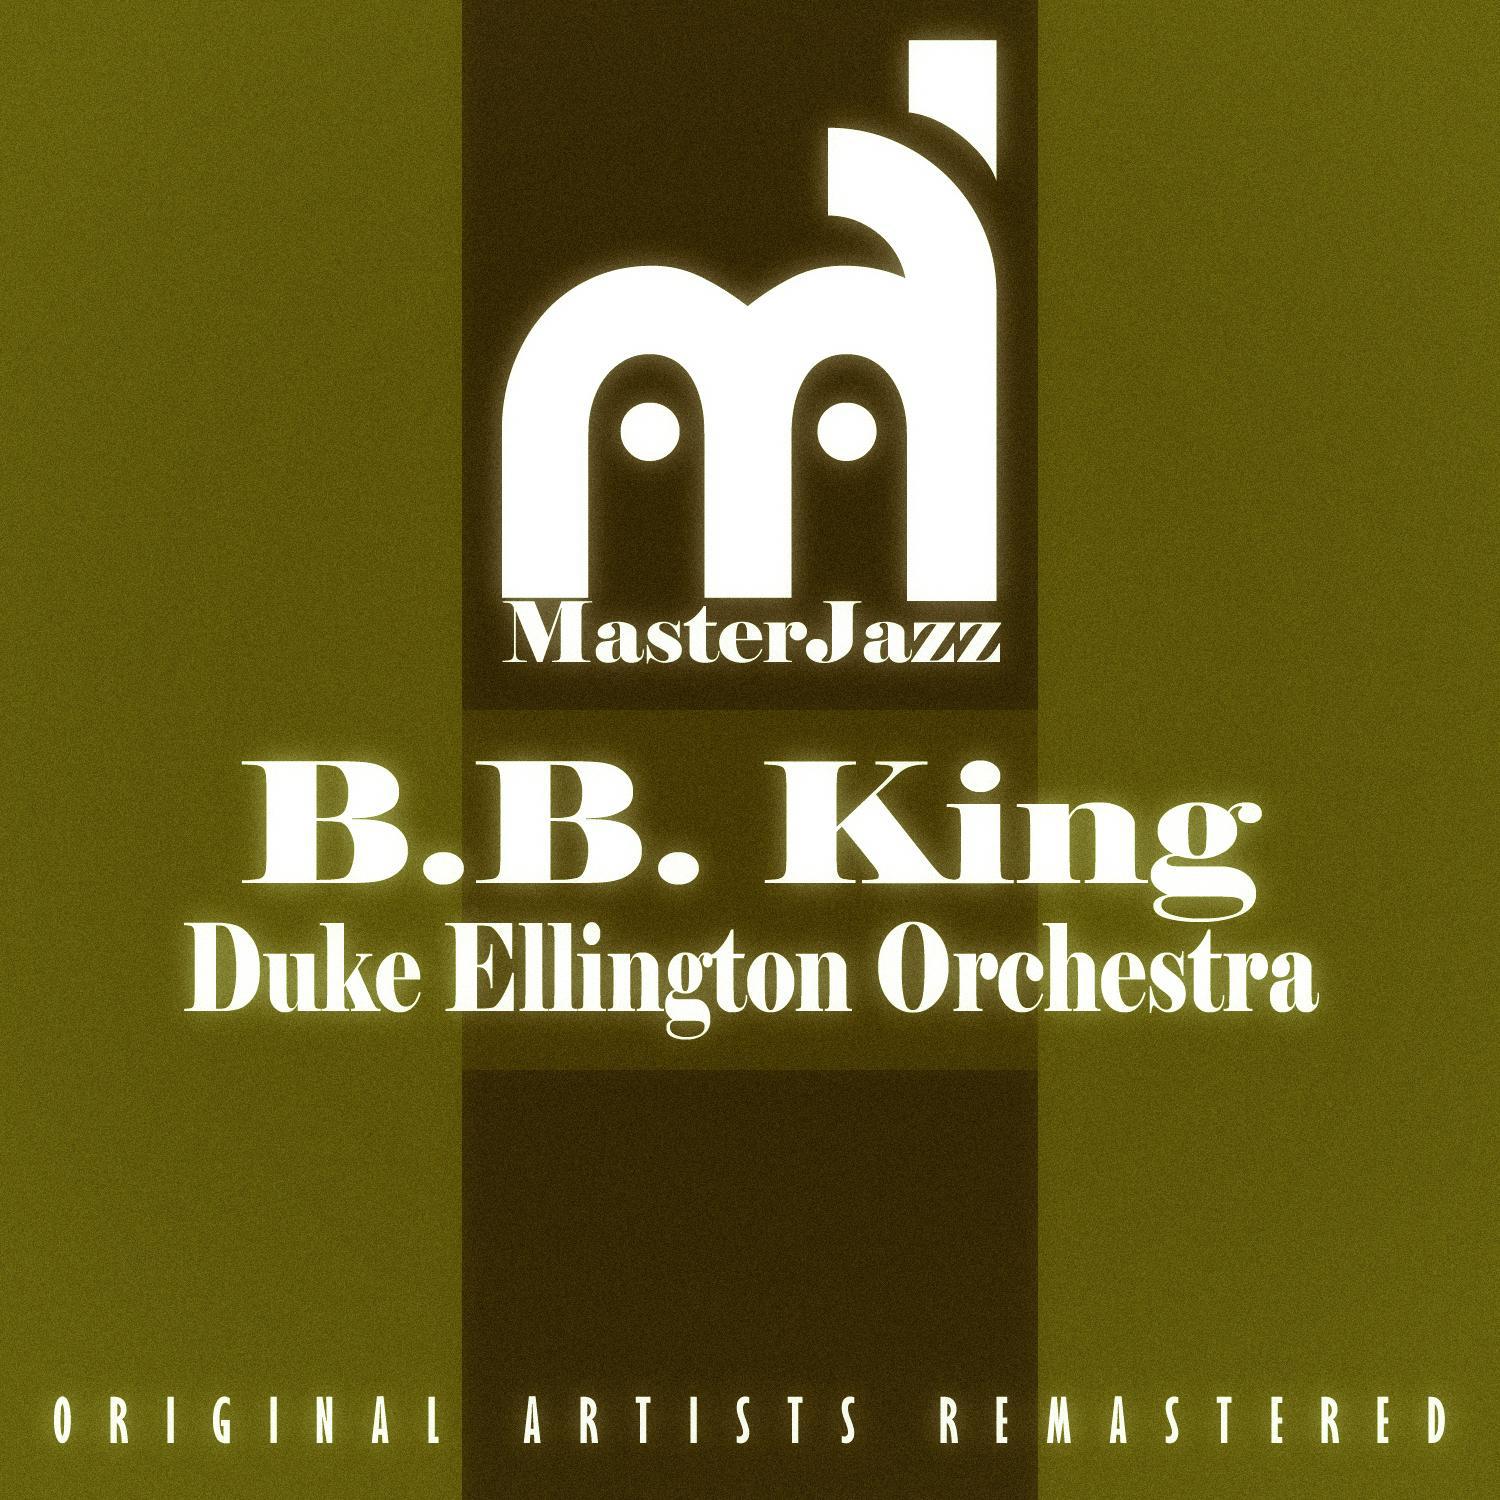 B.B. King & Duke Ellington Orchestra专辑